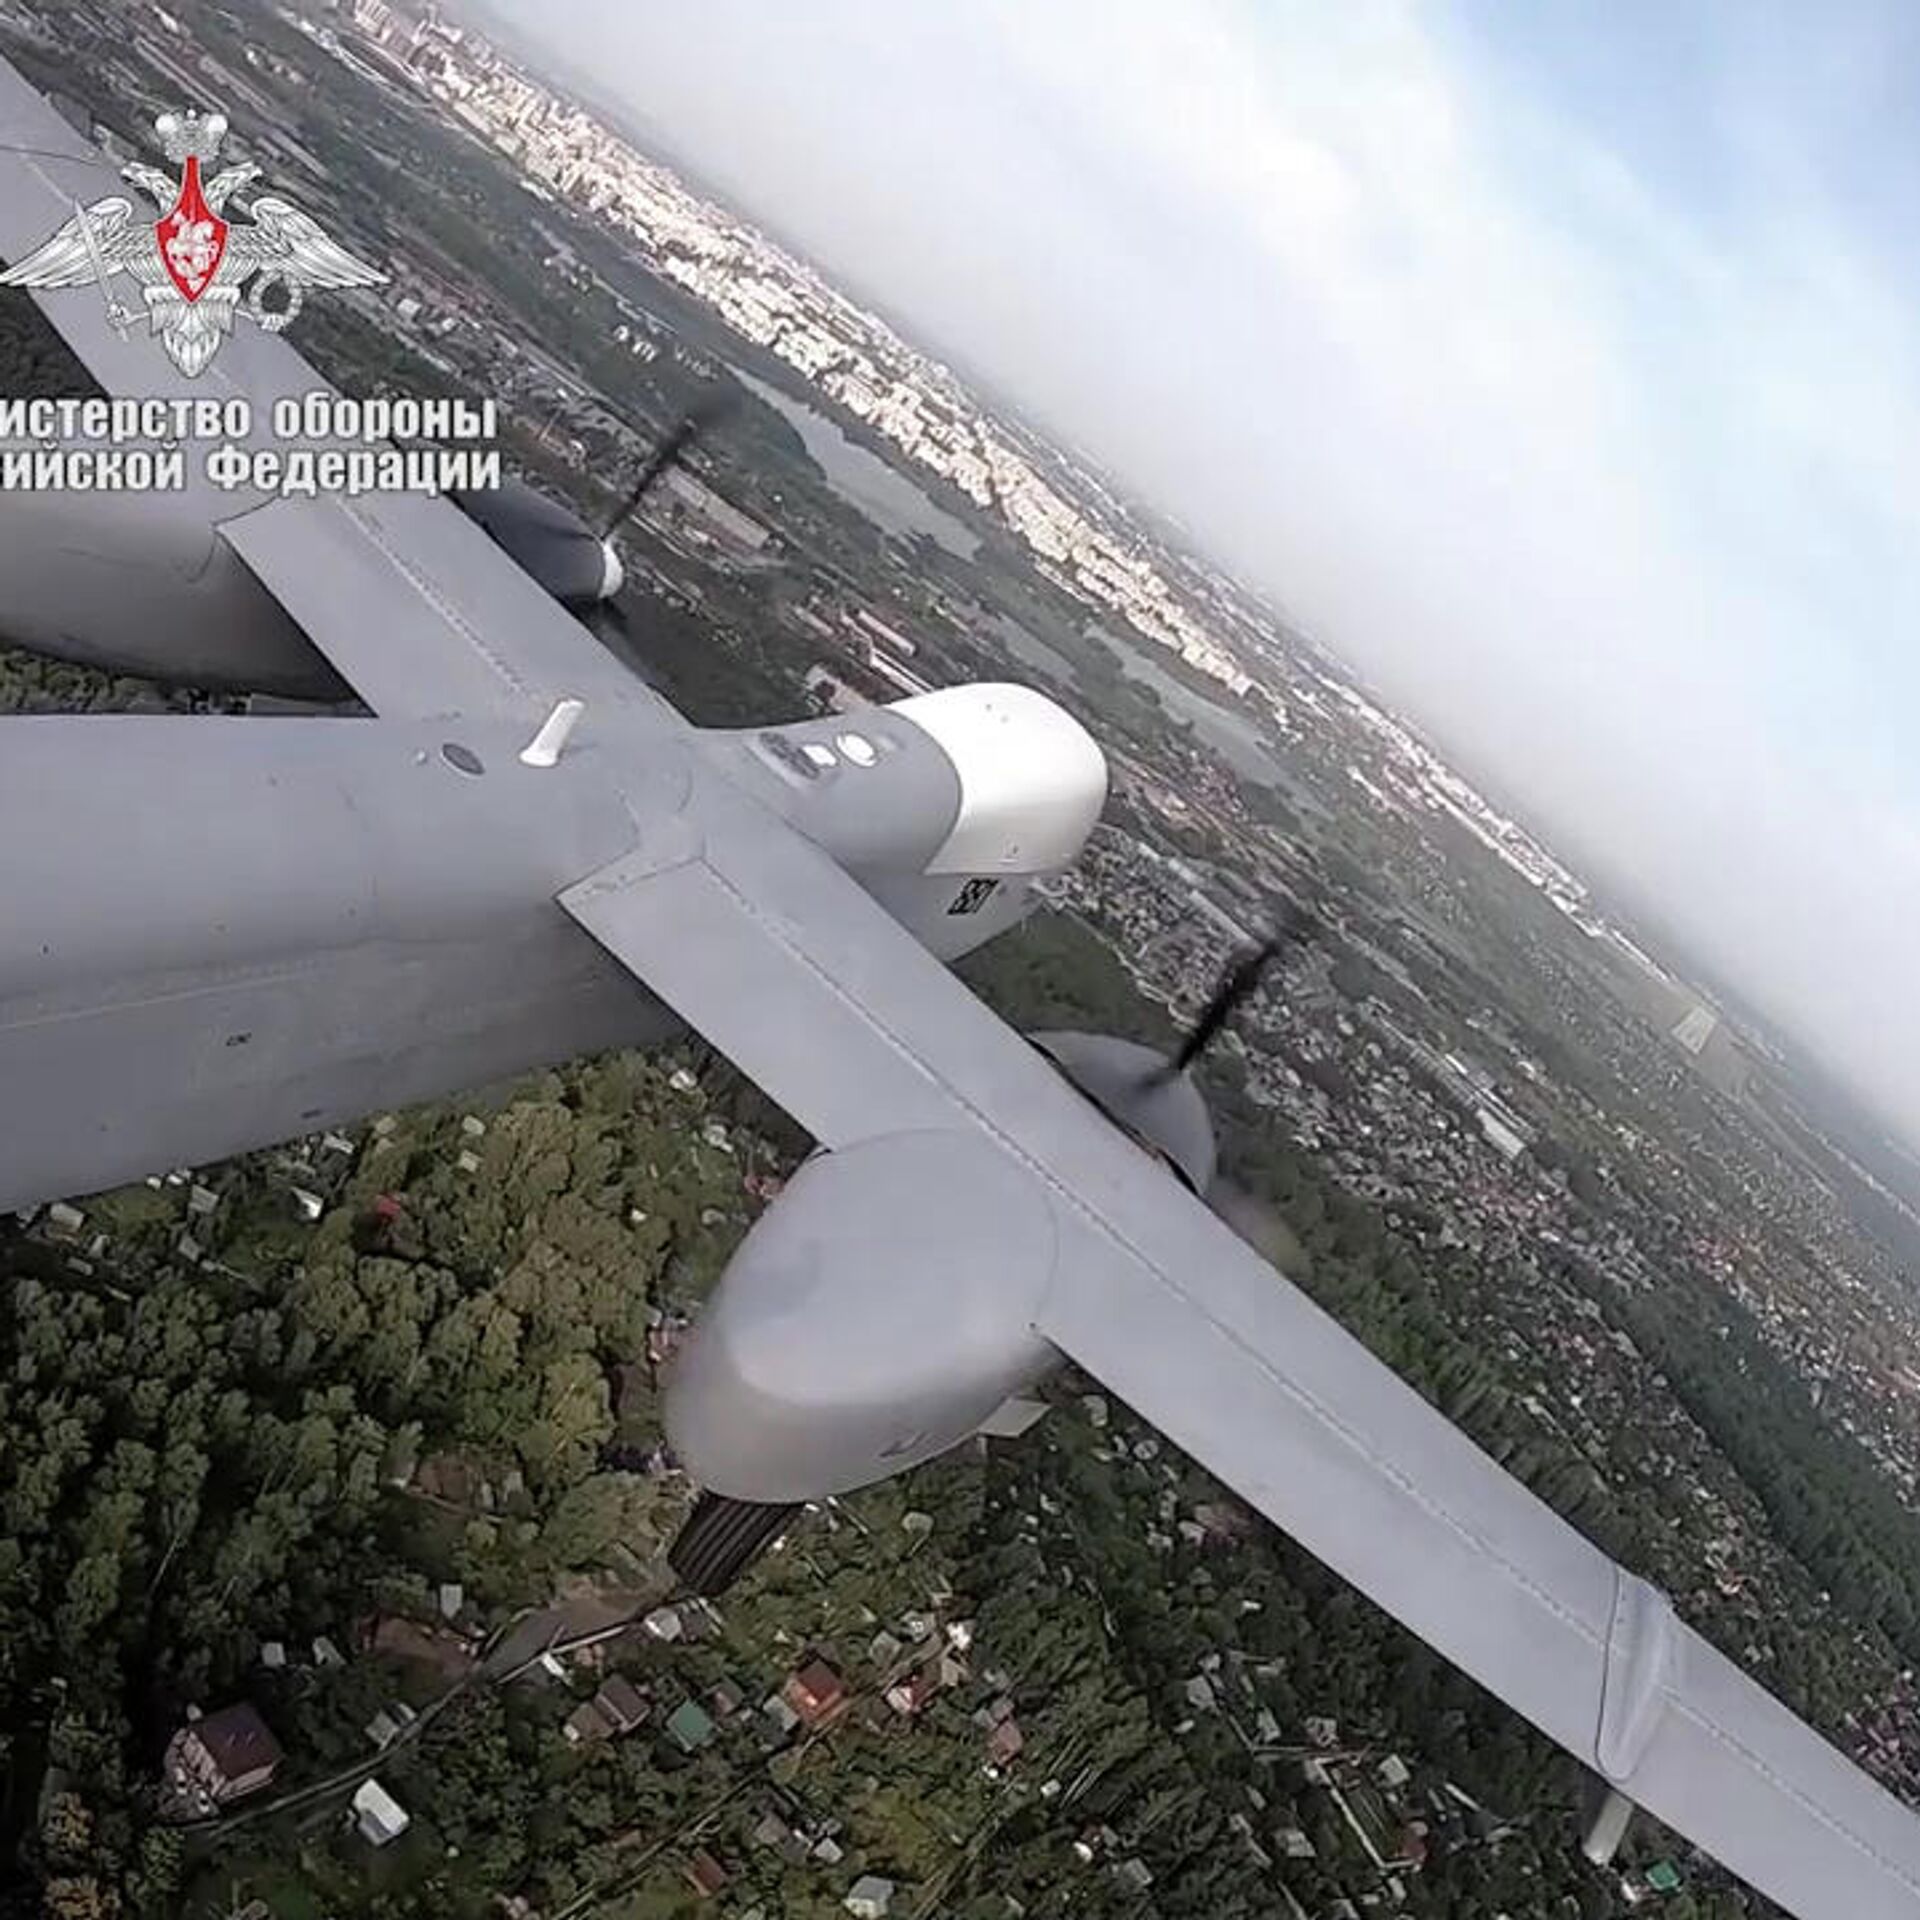 Aventuras do vehículo aéreo non tripulado ruso "Altius"